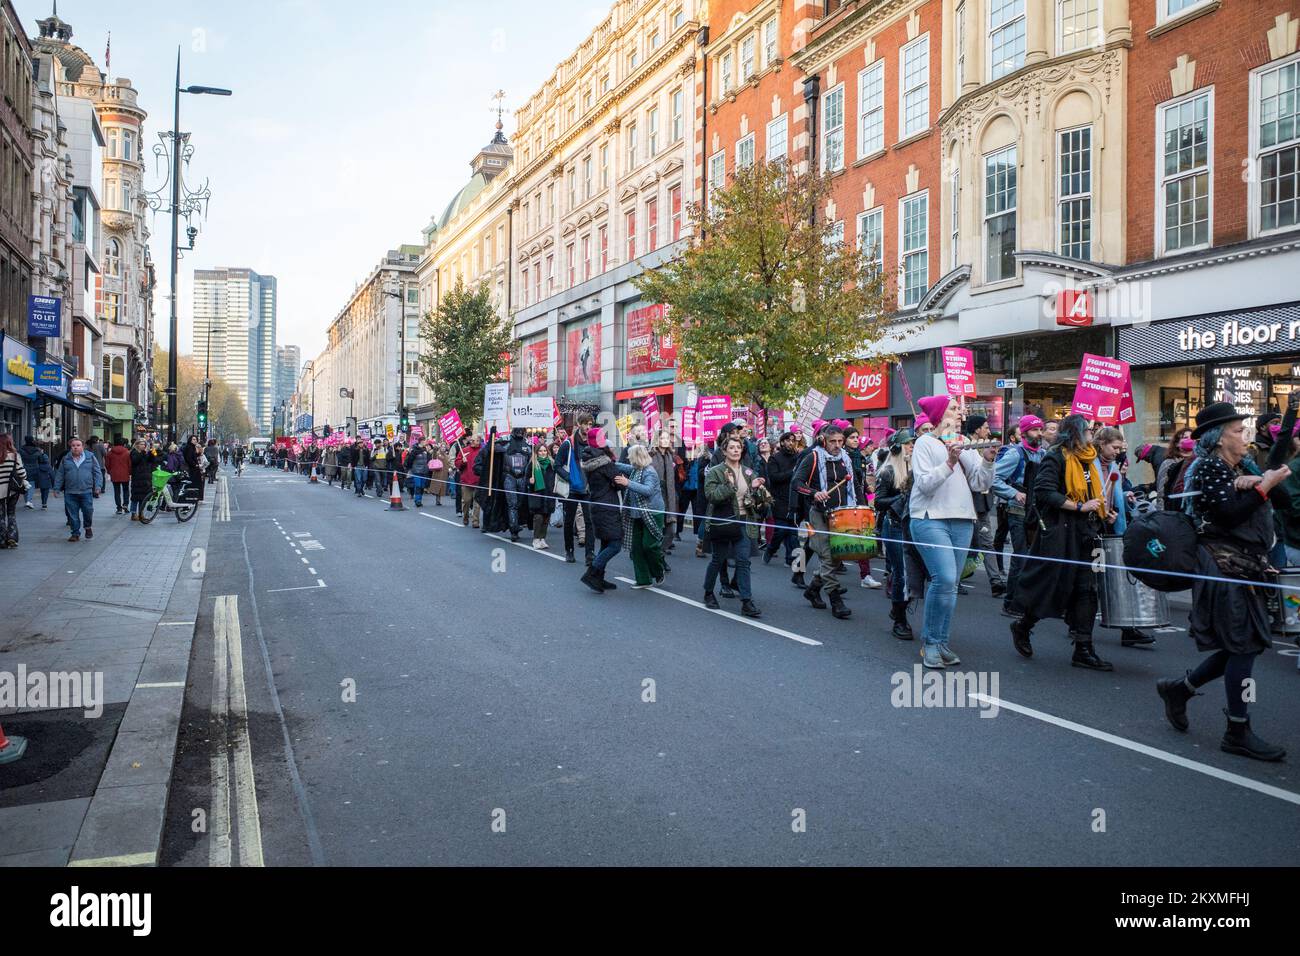 UCU démonstration nationale 30/11/2022. Les étudiants marchent sur Tottenham court Road dans le centre de Londres pour exiger des salaires et des droits des travailleurs plus équitables pour le personnel. Banque D'Images